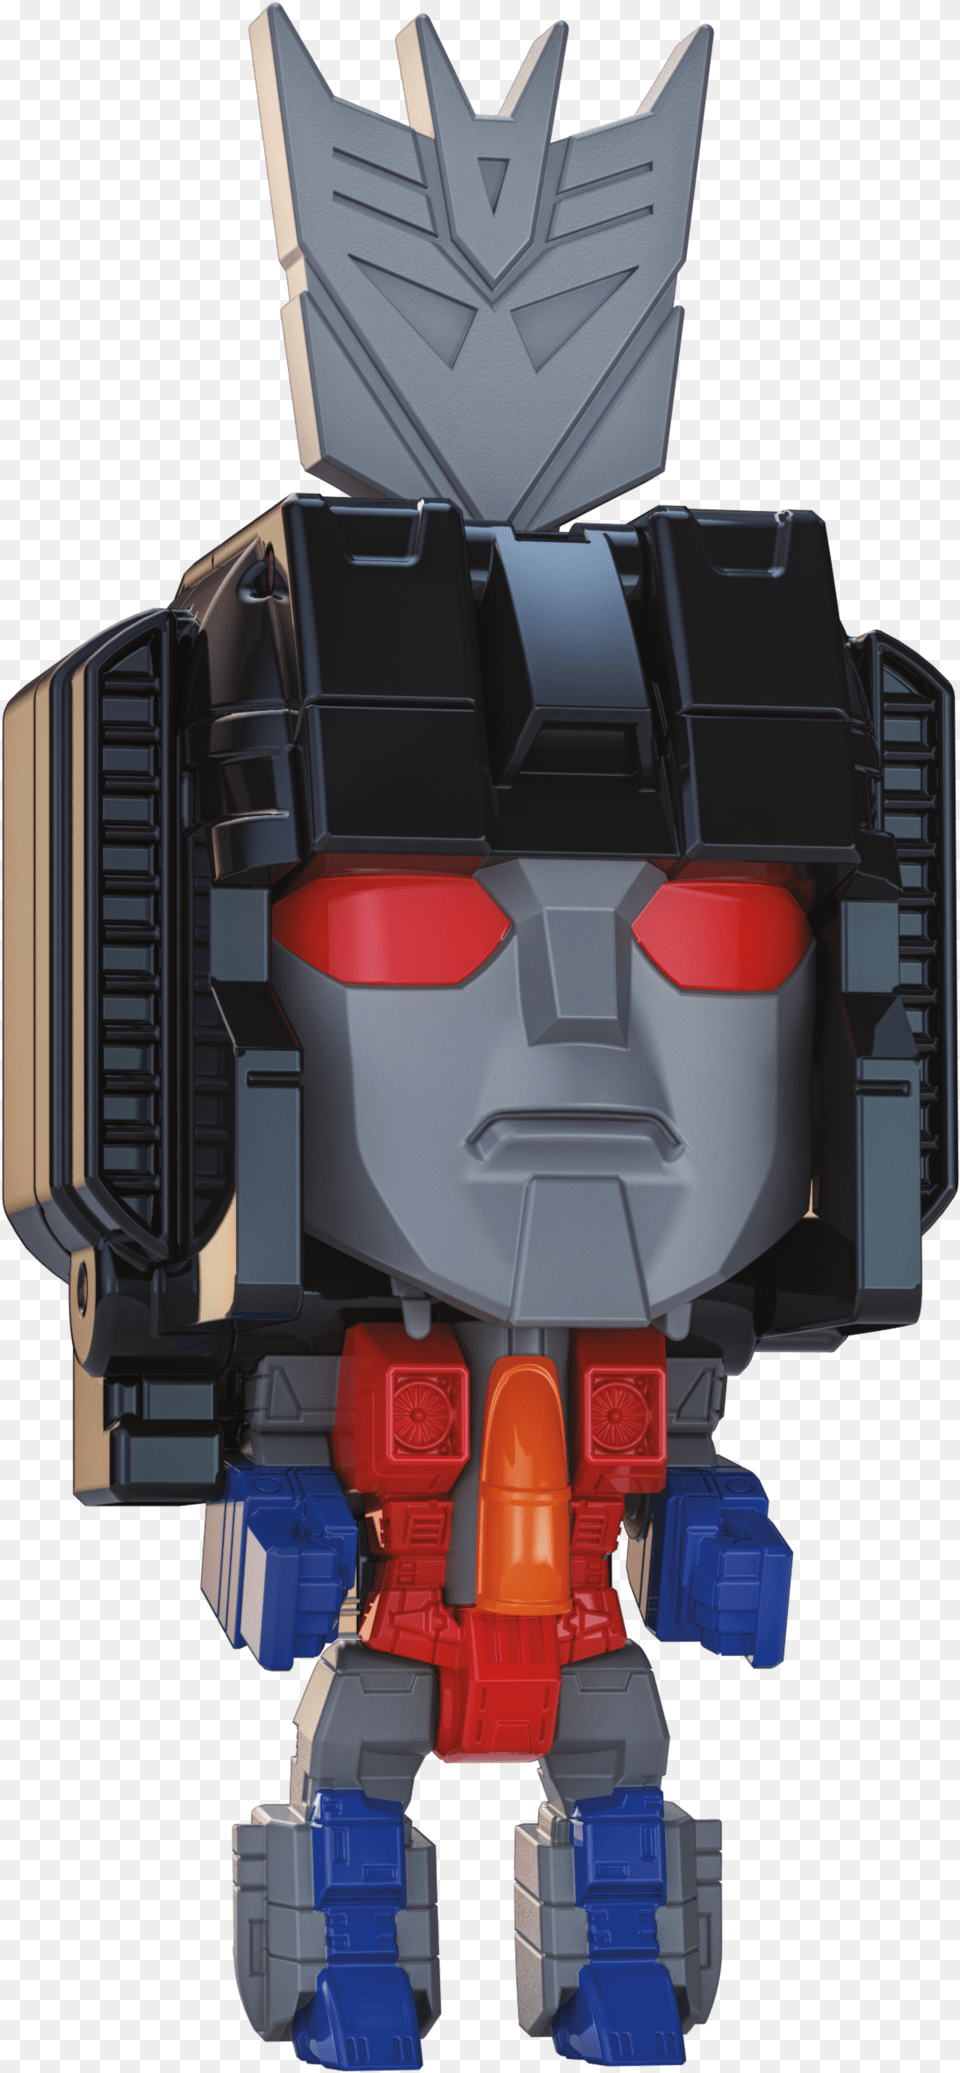 Transformer Generation Alt Modes Skywarp, Toy, Robot Png Image